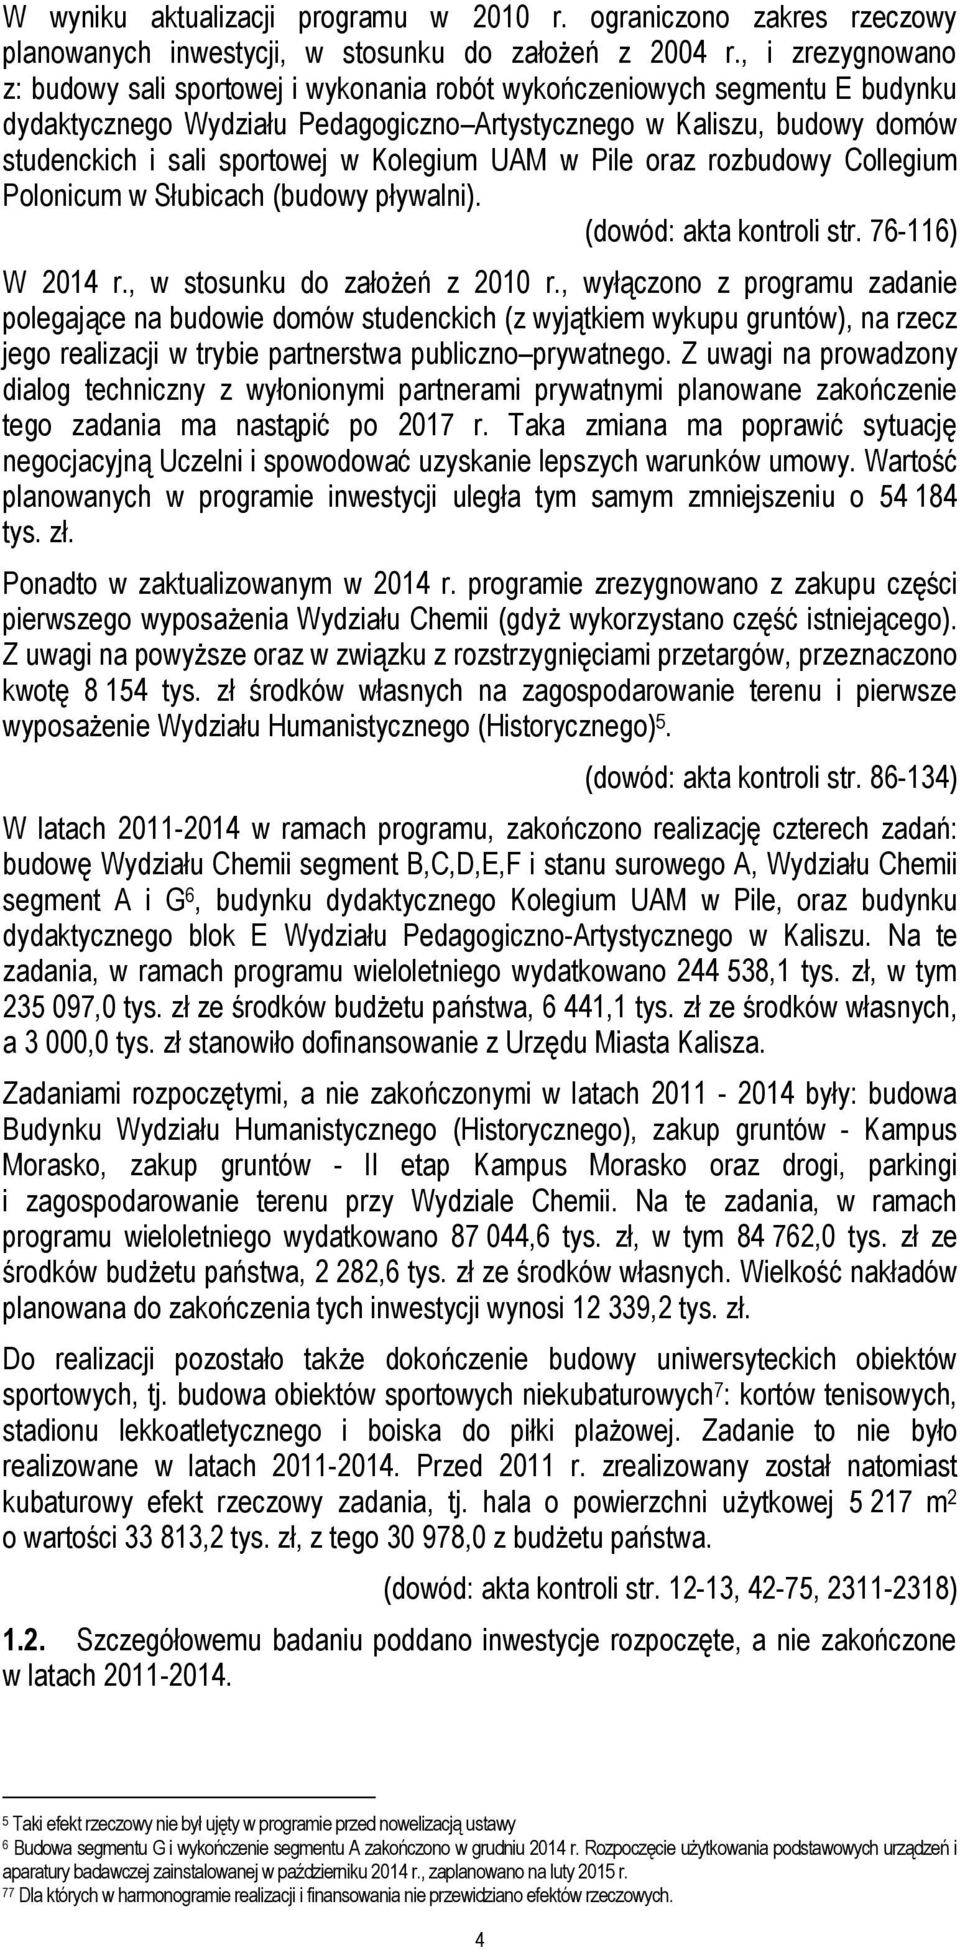 Kolegium UAM w Pile oraz rozbudowy Collegium Polonicum w Słubicach (budowy pływalni). (dowód: akta kontroli str. 76-116) W 2014 r., w stosunku do założeń z 2010 r.